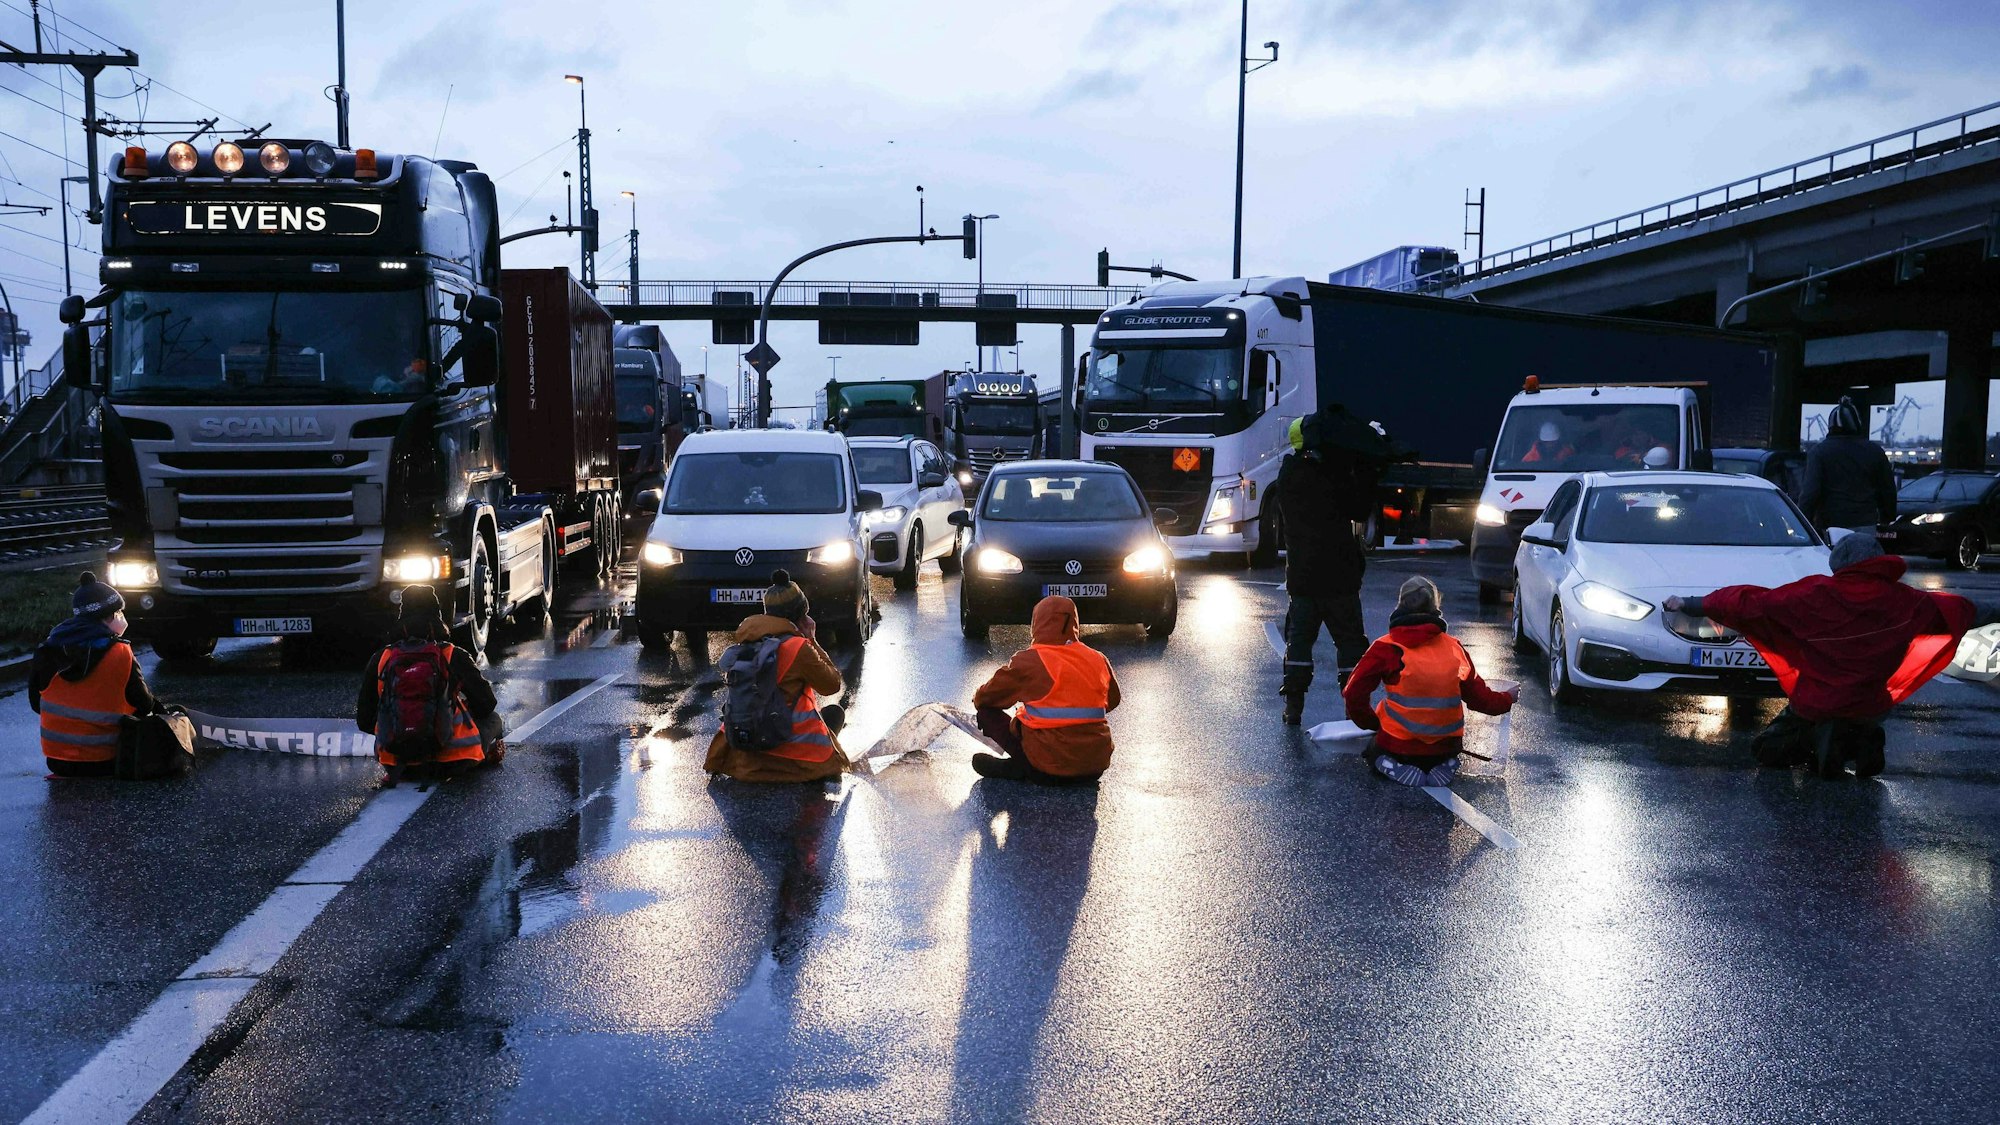 Klimaaktivisten sitzen mit dem Rücken zur Kamera auf einer mehrspurigen Kreuzung. Vor ihnen stehen Autos und LKW.